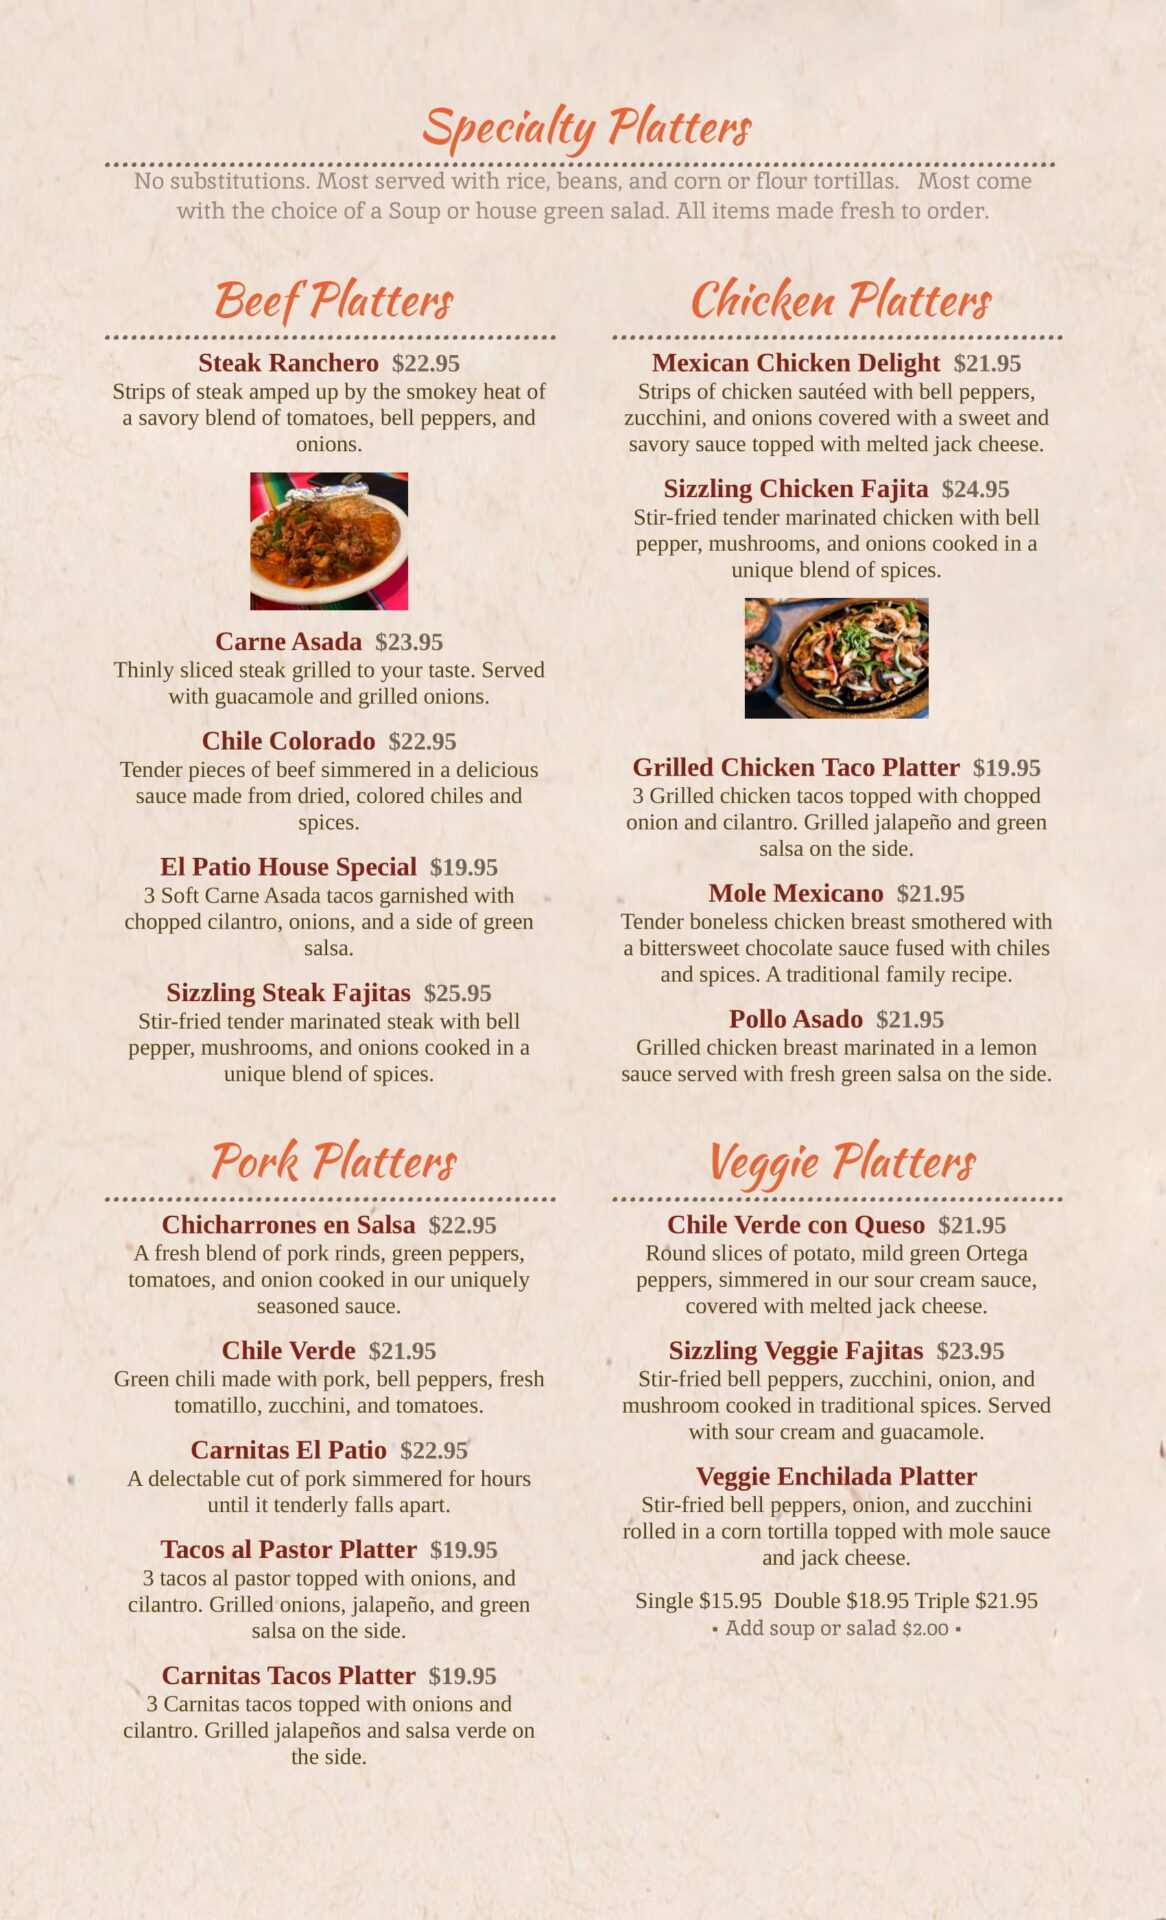 Specialty platters menu on display of the website